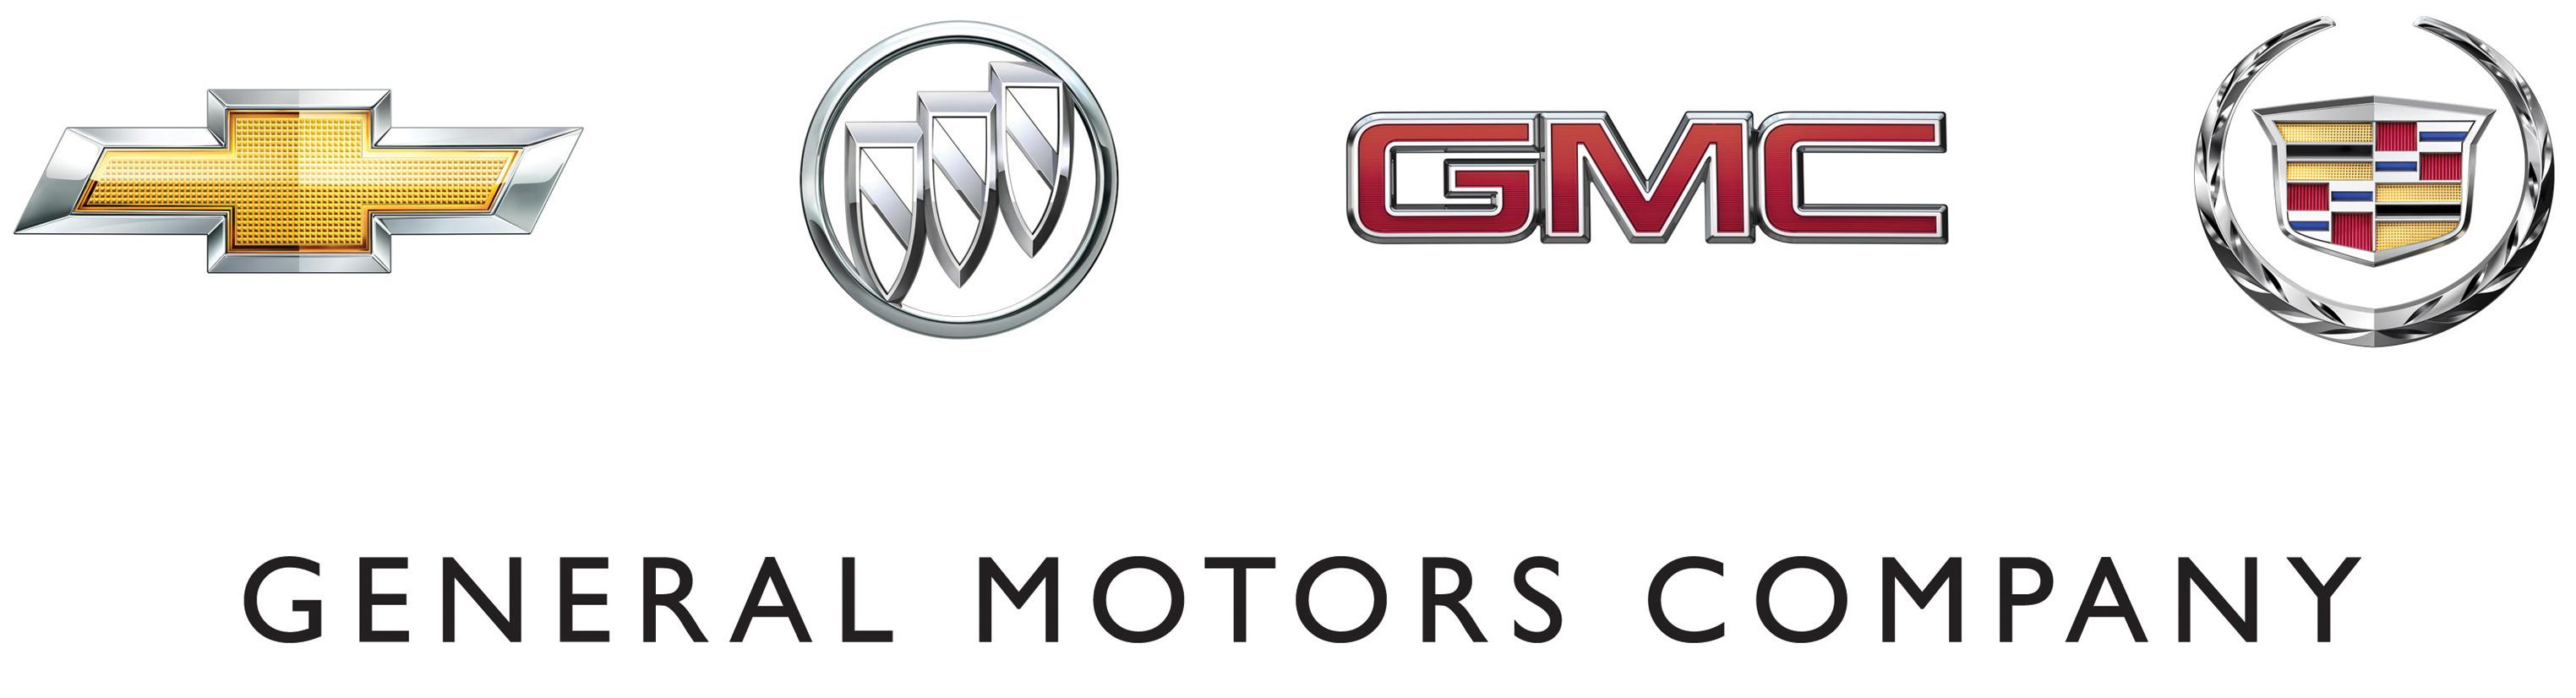 GM Car Logo - Gm Car Brands - Thestartupguide.co •